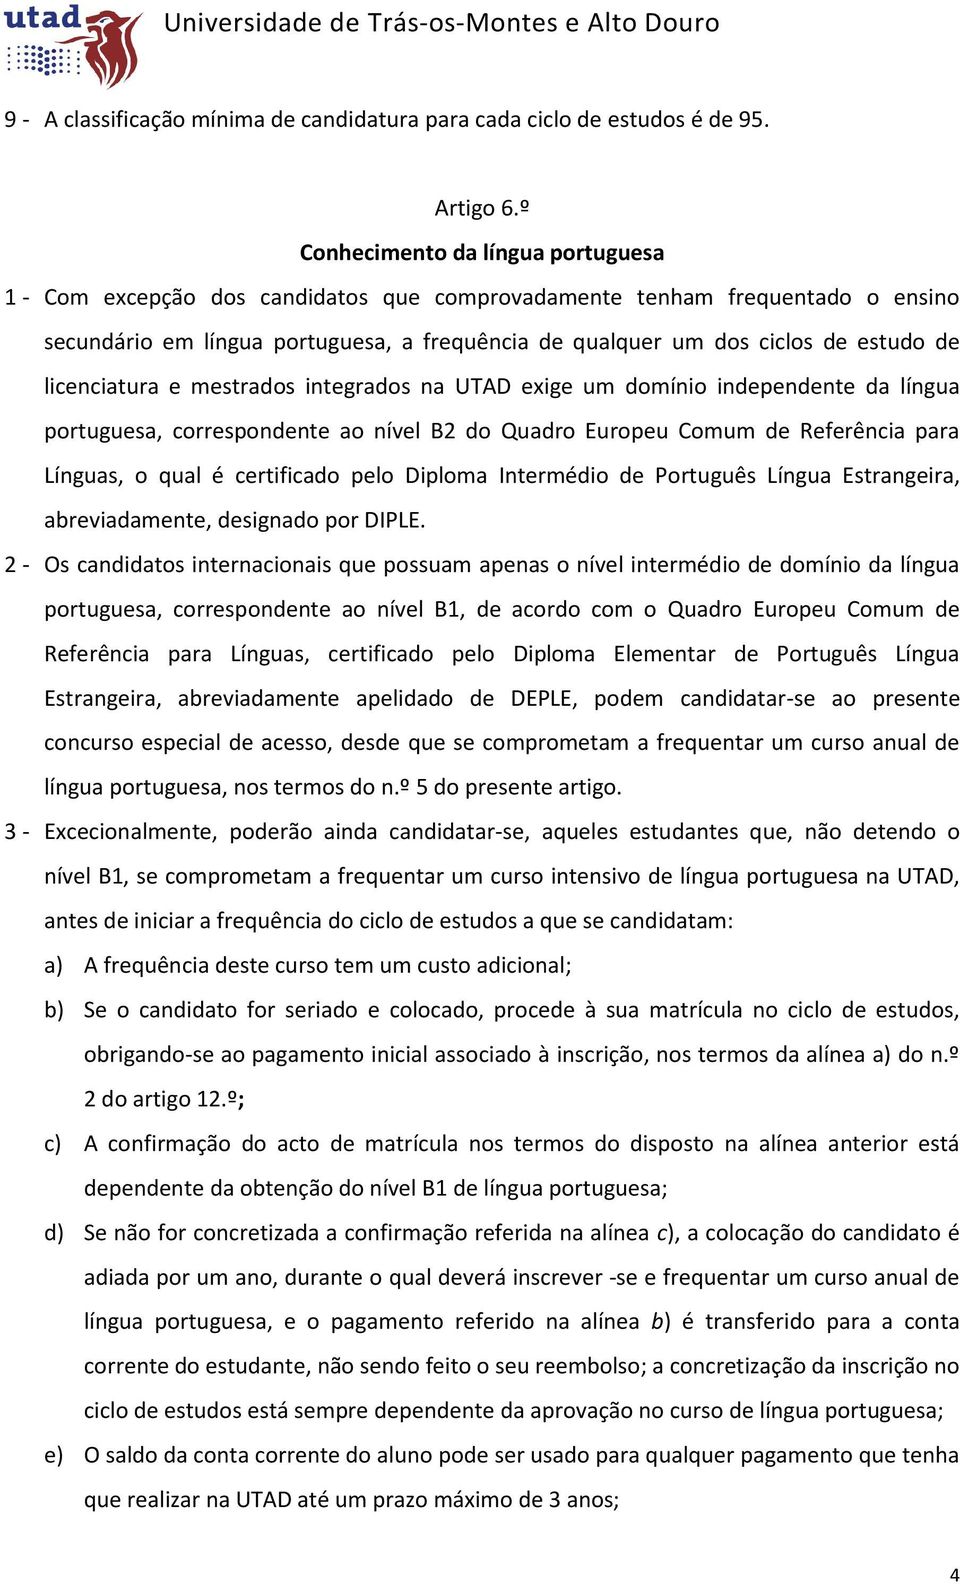 de licenciatura e mestrados integrados na UTAD exige um domínio independente da língua portuguesa, correspondente ao nível B2 do Quadro Europeu Comum de Referência para Línguas, o qual é certificado